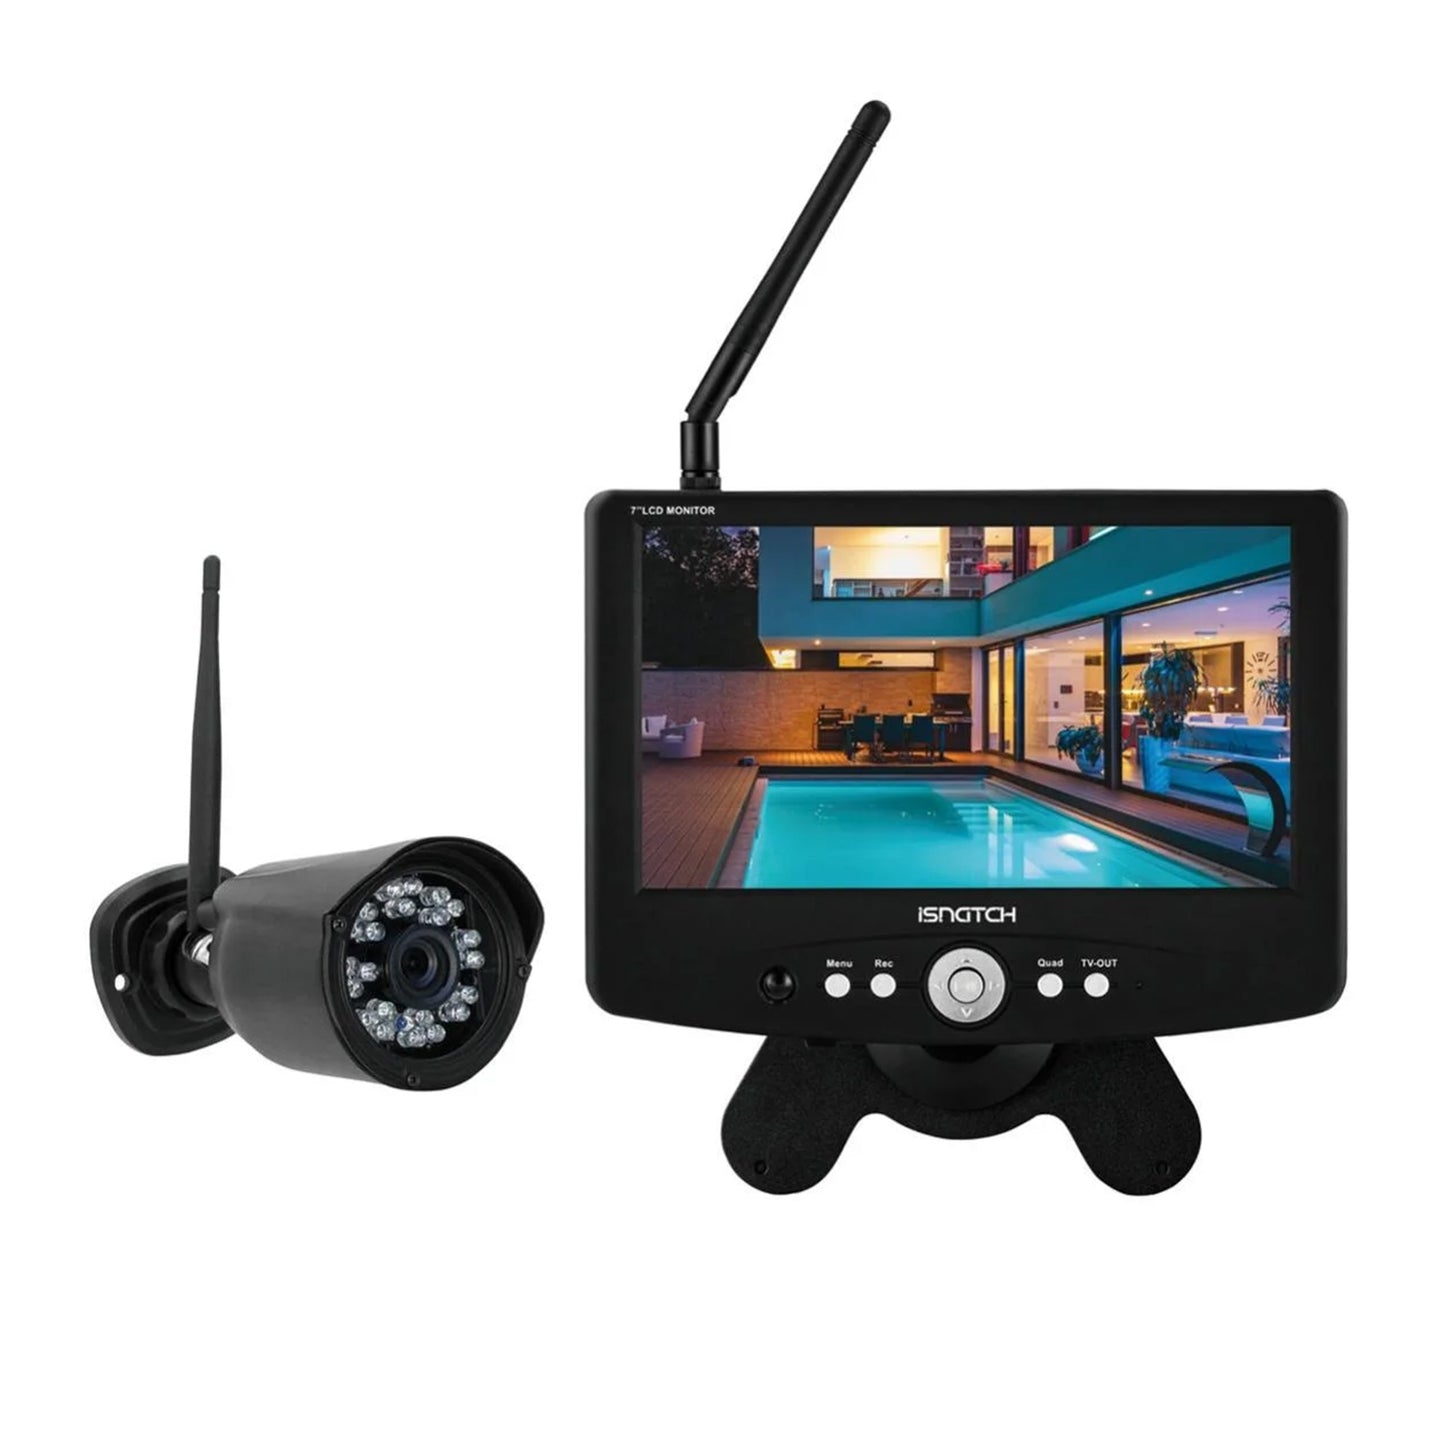 iSnatch 67.4000.90 Kit videosorveglianza con monitor DVR da 7” e telecamera wireless 720p, telecomando per controllo a distanza